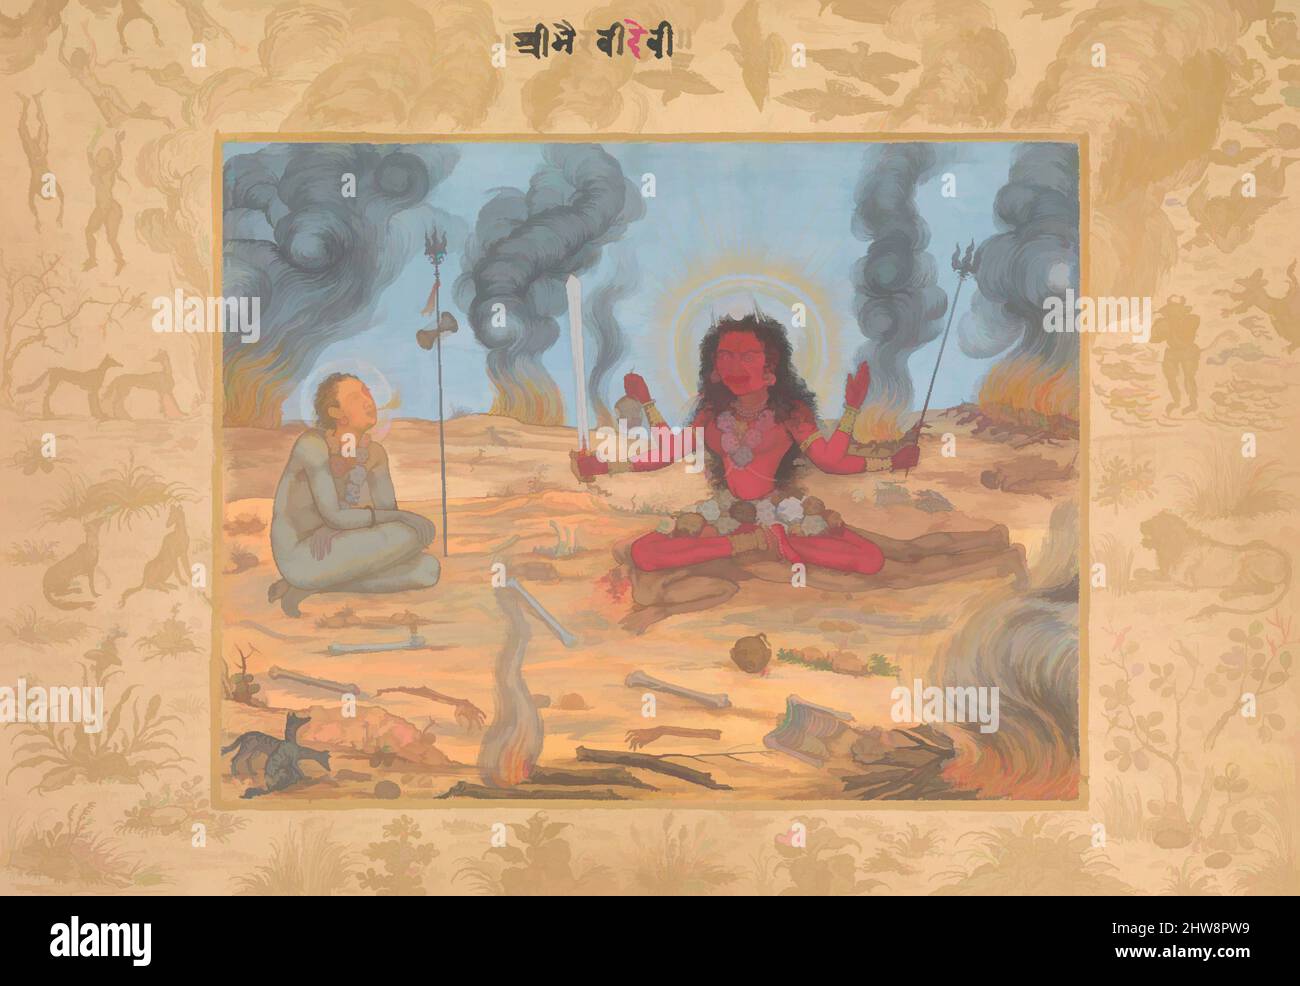 Arte ispirata alla dea Bhairavi Devi con Shiva, ca. 1630–35, Paese di origine India, acquerello opaco e oro su carta, H. 7 1/4 poll. (18,5 cm), Codices, attribuito a Payag (indiano, attivo ca. 1591–1658), in questo dipinto attribuito all'artista Mughal Payag, una forma demoniaca, opere classiche modernizzate da Artotop con un tuffo di modernità. Forme, colore e valore, impatto visivo accattivante sulle emozioni artistiche attraverso la libertà delle opere d'arte in modo contemporaneo. Un messaggio senza tempo che persegue una nuova direzione selvaggiamente creativa. Artisti che si rivolgono al supporto digitale e creano l'NFT Artotop Foto Stock